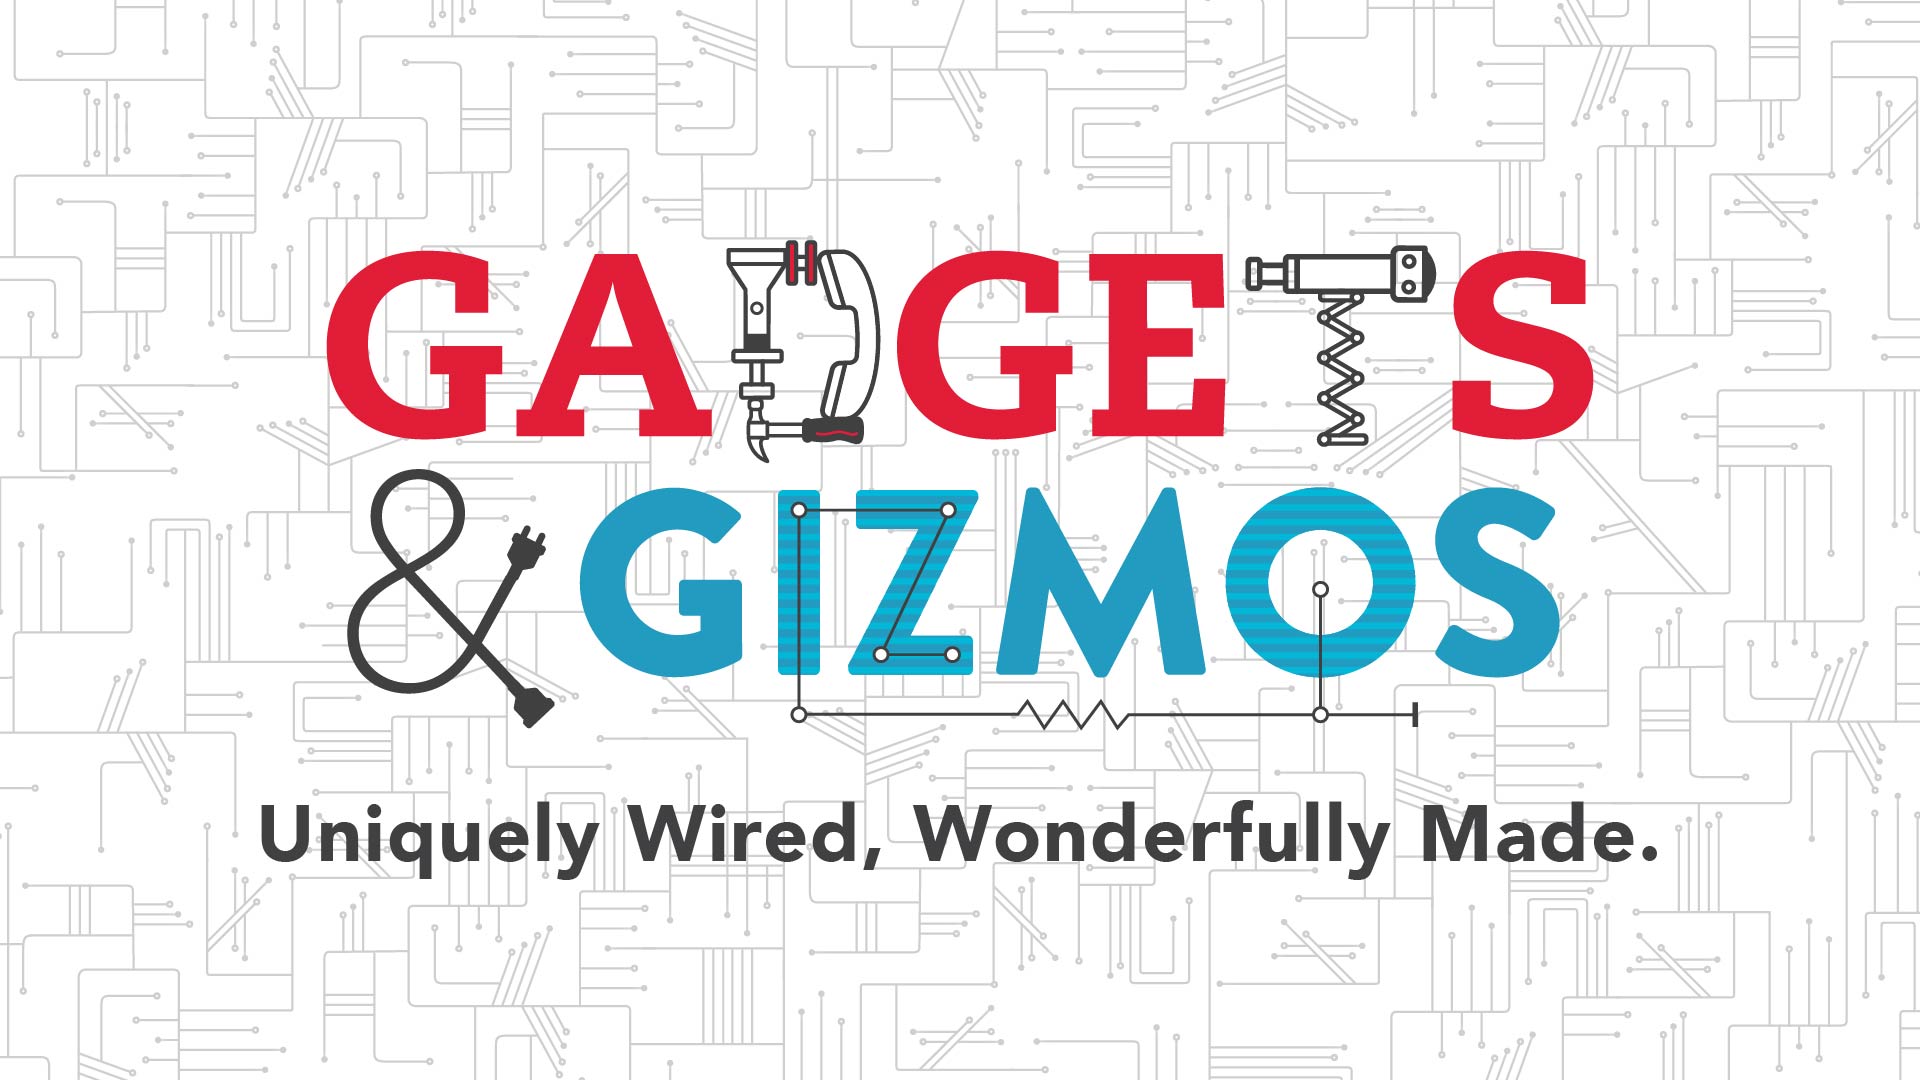 Gadgets & Gizmos